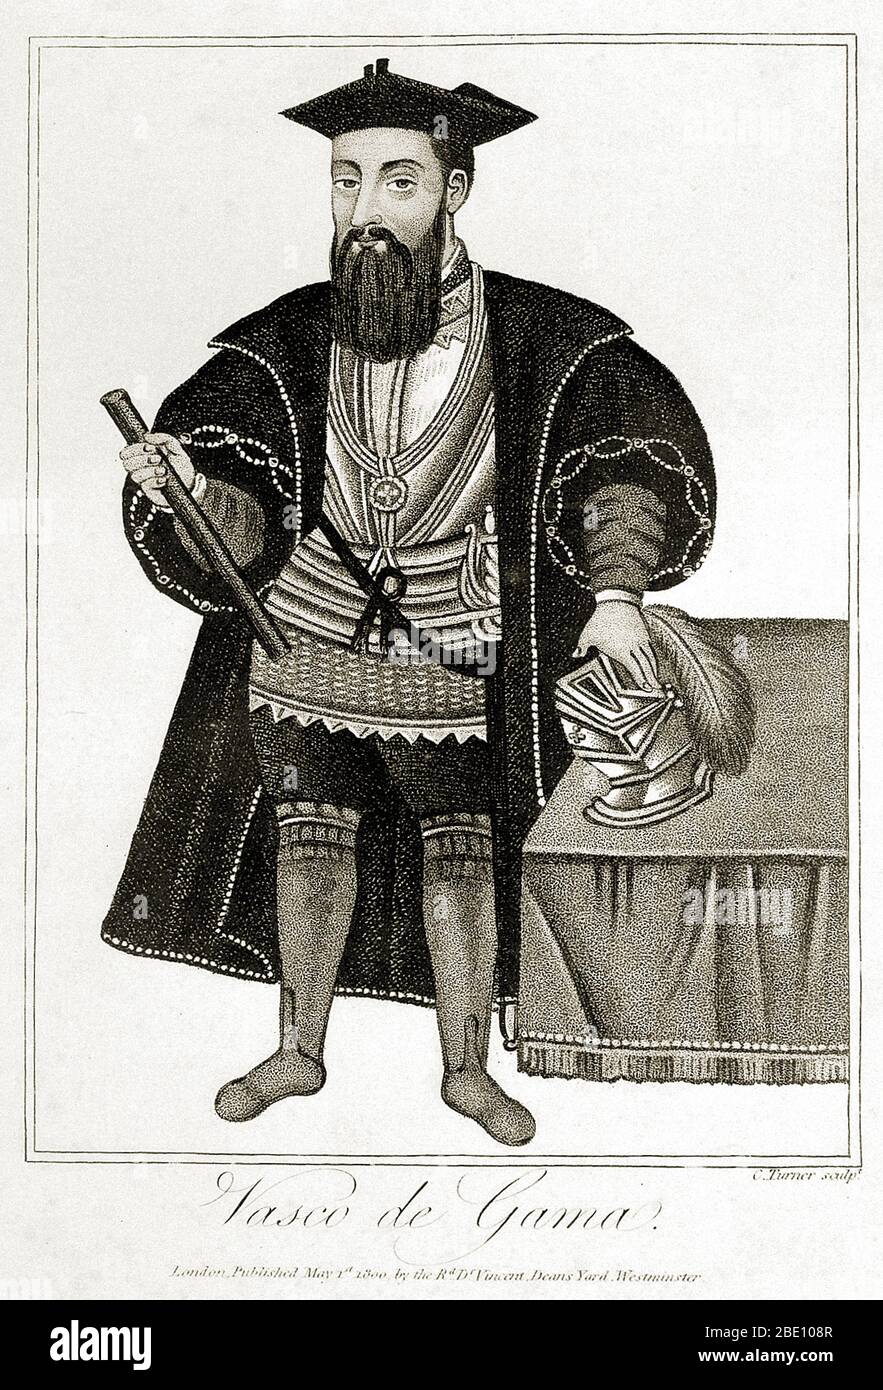 Vasco da Gama (1460er - 24. Dezember 1524) war ein portugiesischer Forscher und der erste Europäer, der Indien auf dem Seeweg erreichte. Seine erste Reise nach Indien (1497-99) war die erste, die Europa und Asien durch eine Ozeanroute verband, die den Atlantik mit dem Indischen Ozean und damit den Westen und den Orient verband. Da Gamas Entdeckung der Seeroute nach Indien war bedeutsam und öffnete den Weg für ein Zeitalter des globalen Imperialismus und für die Portugiesen, um ein lang anhaltendes Kolonialreich in Asien zu errichten. Seine erste Reise nach Indien gilt als Meilenstein in der Weltgeschichte. Stockfoto